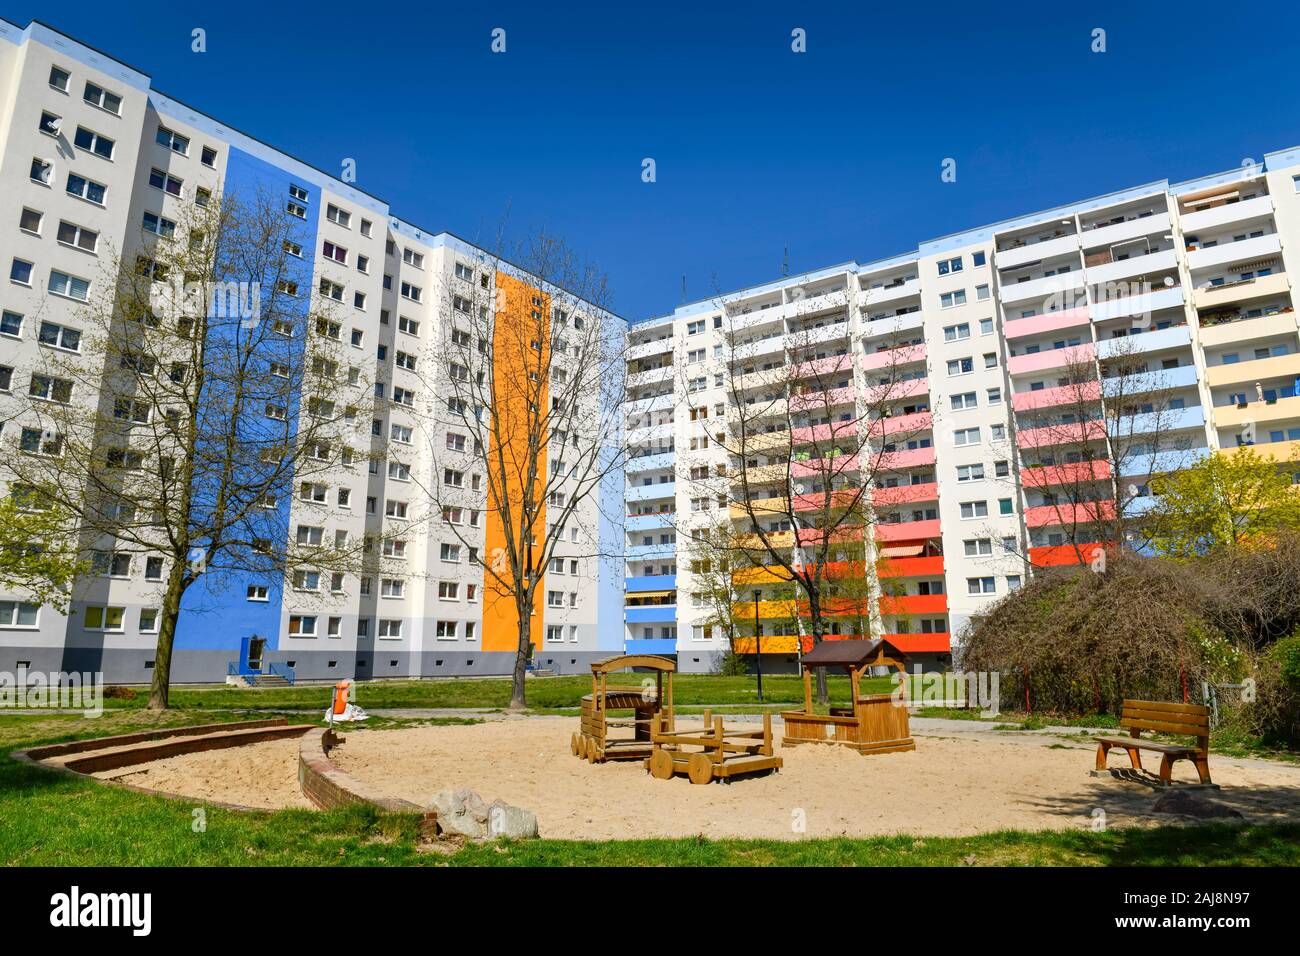 Wohnhäuser, Schönefelder Chaussee, Altglienicke, Treptow-Köpenick, Berlin, Deutschland Stock Photo